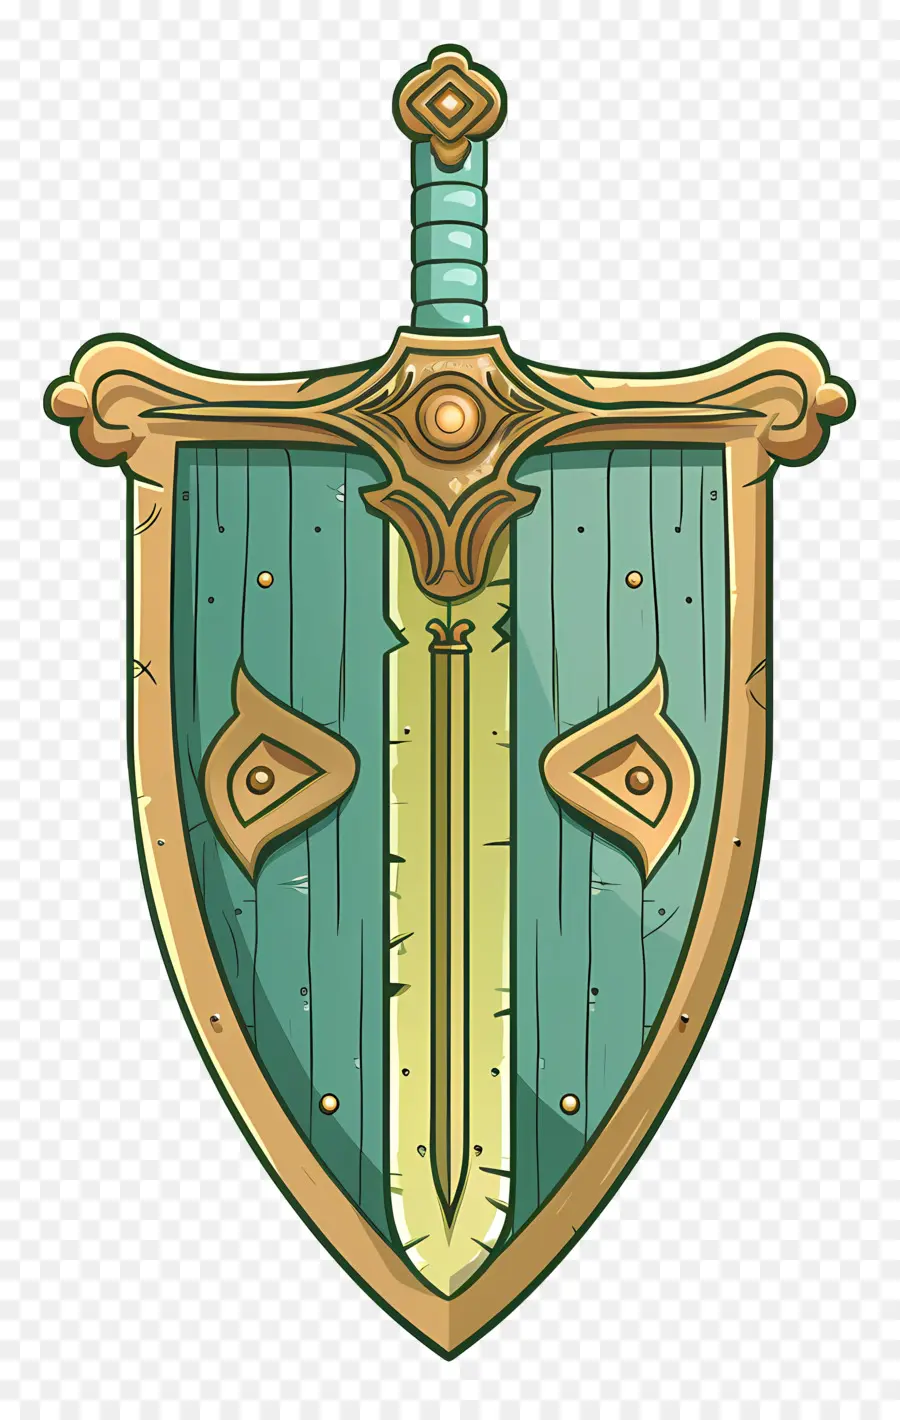 Shield Sword Shield Swords Chiến binh thời trung cổ - Khiên hiệp sĩ thời trung cổ với những thanh kiếm chéo